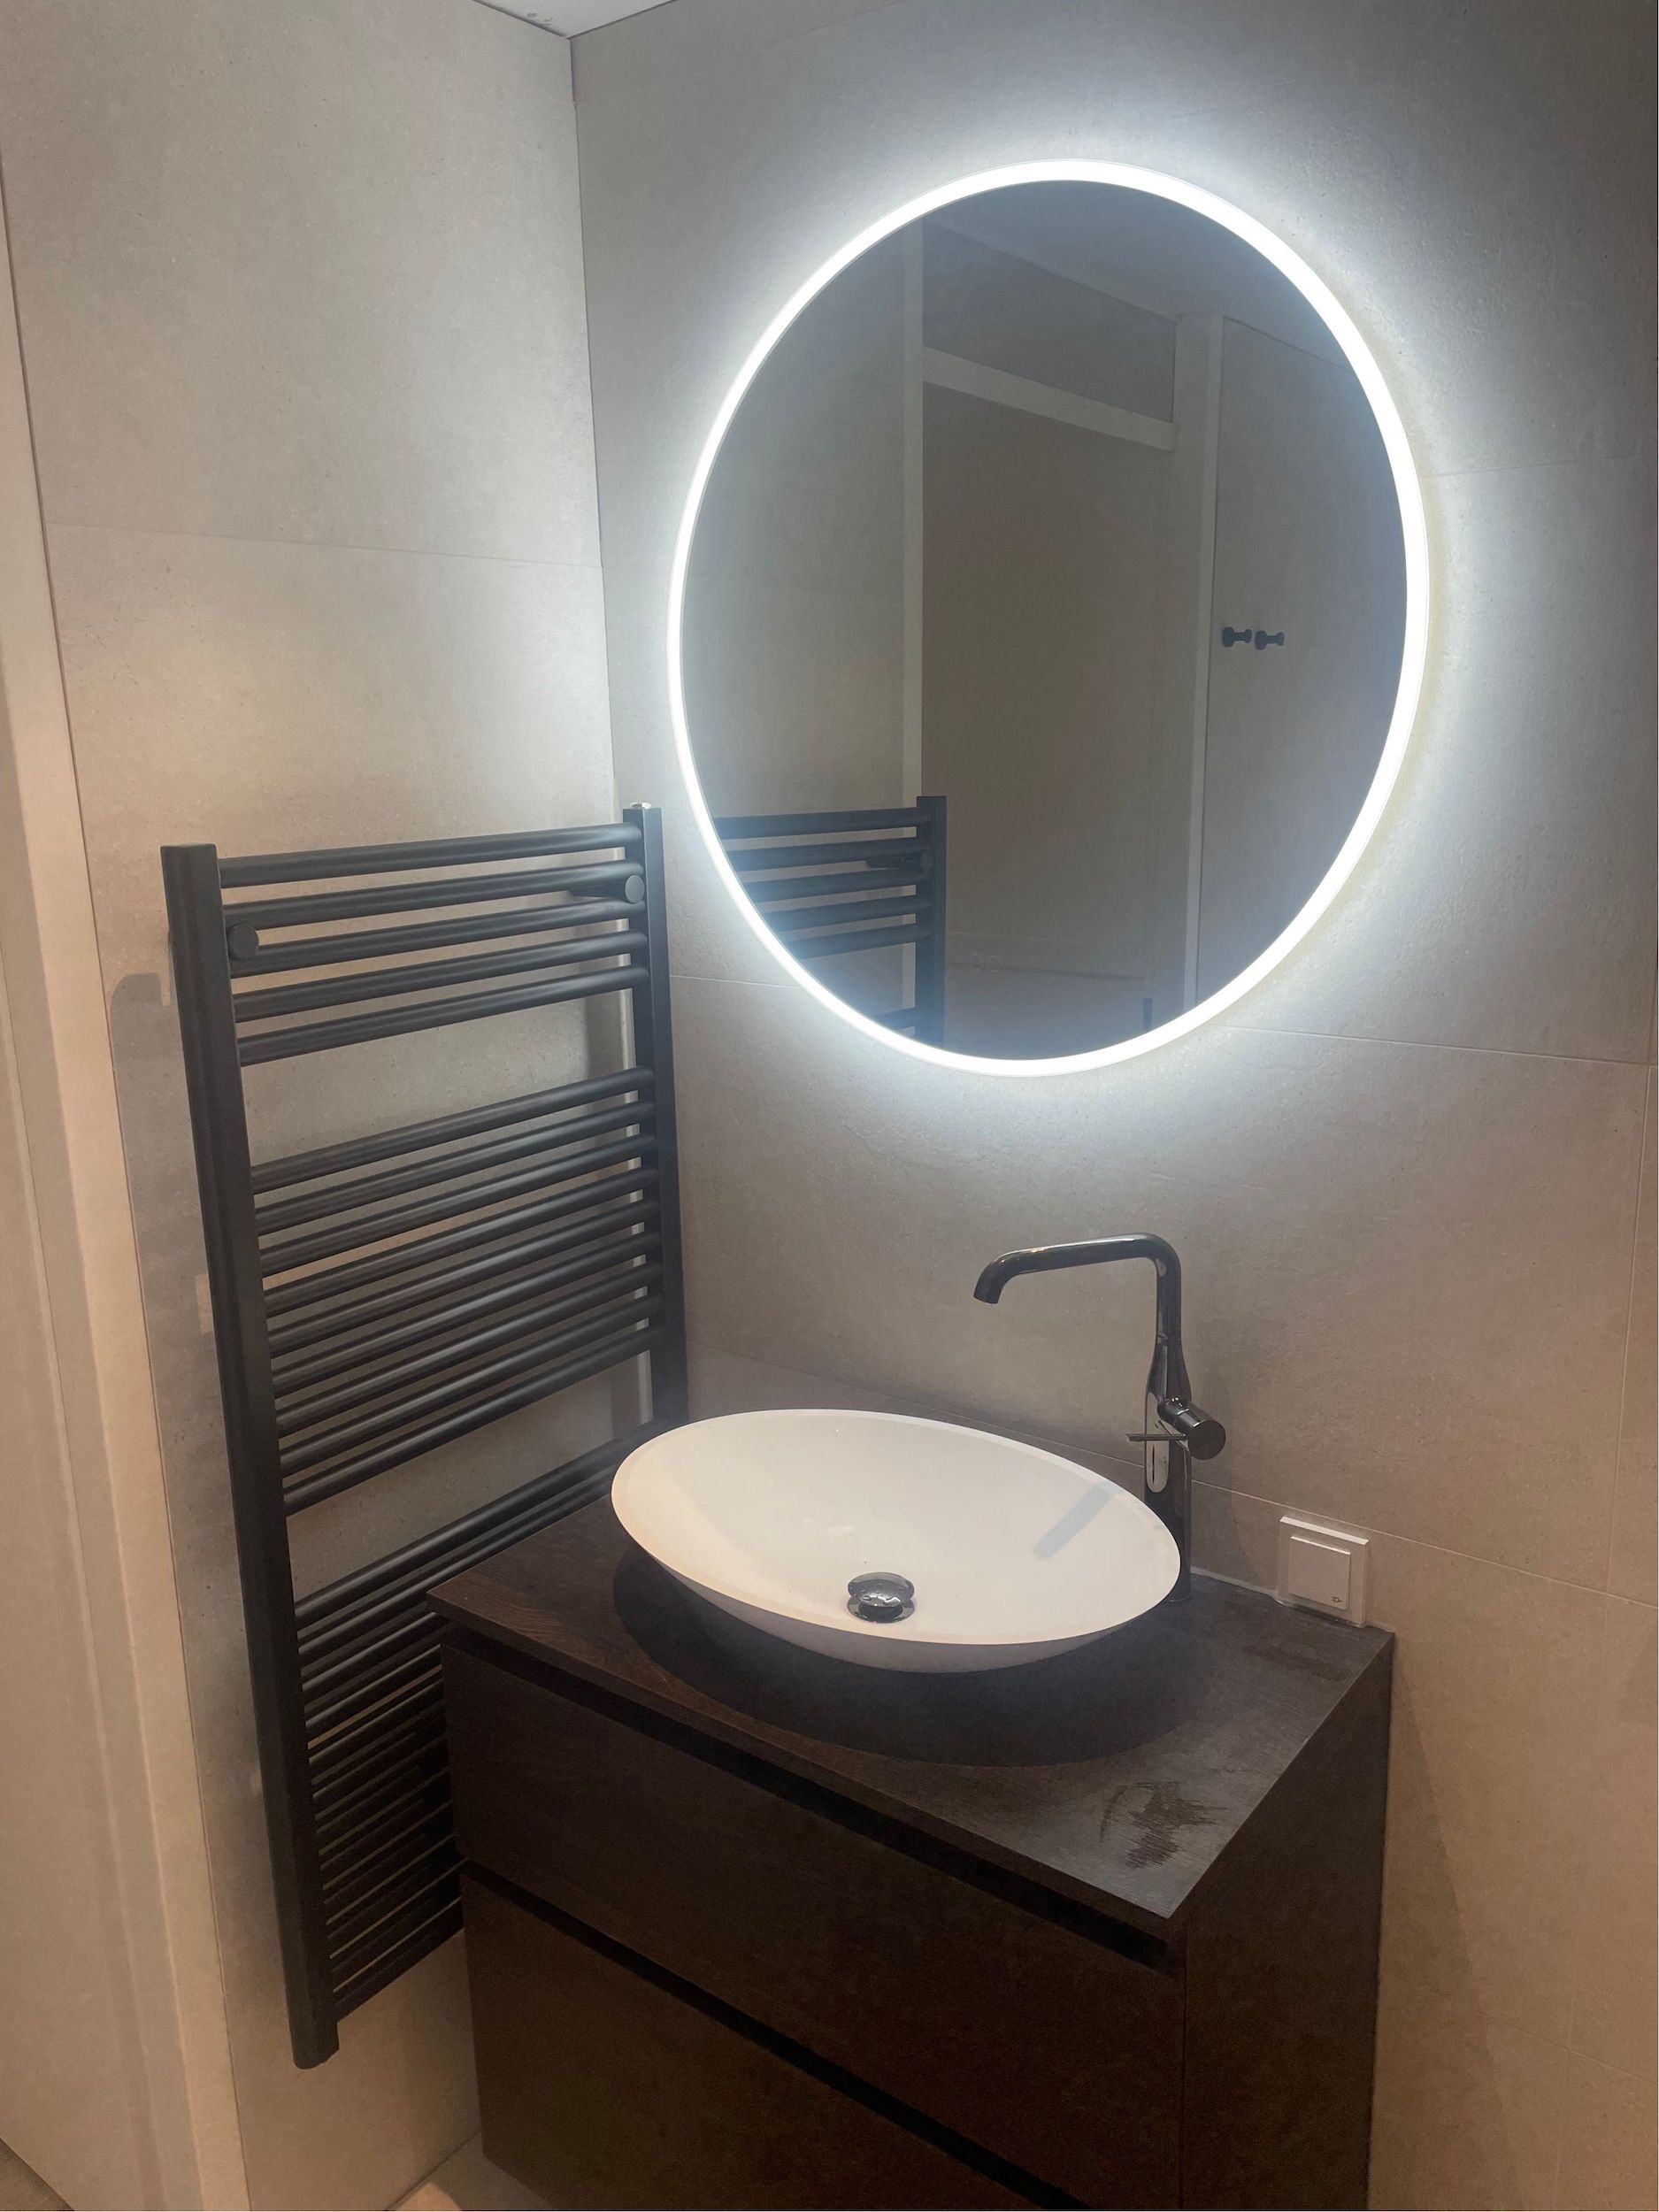 Bizot Installatietechniek – Project badkamer verbouwing 2022 3